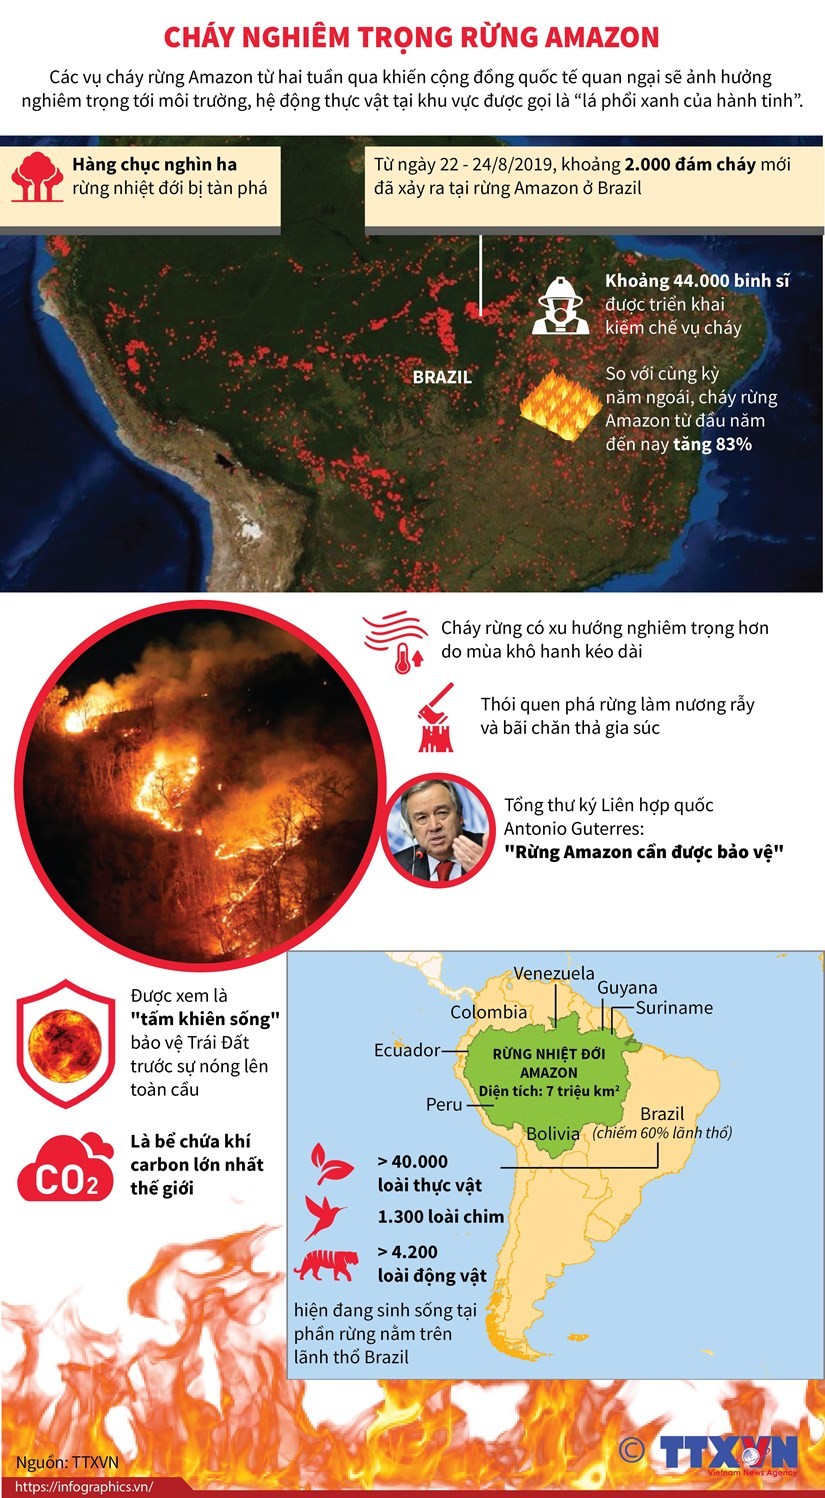 Cháy rừng Amazon ngày càng diễn ra nghiêm trọng và lan rộng hơn